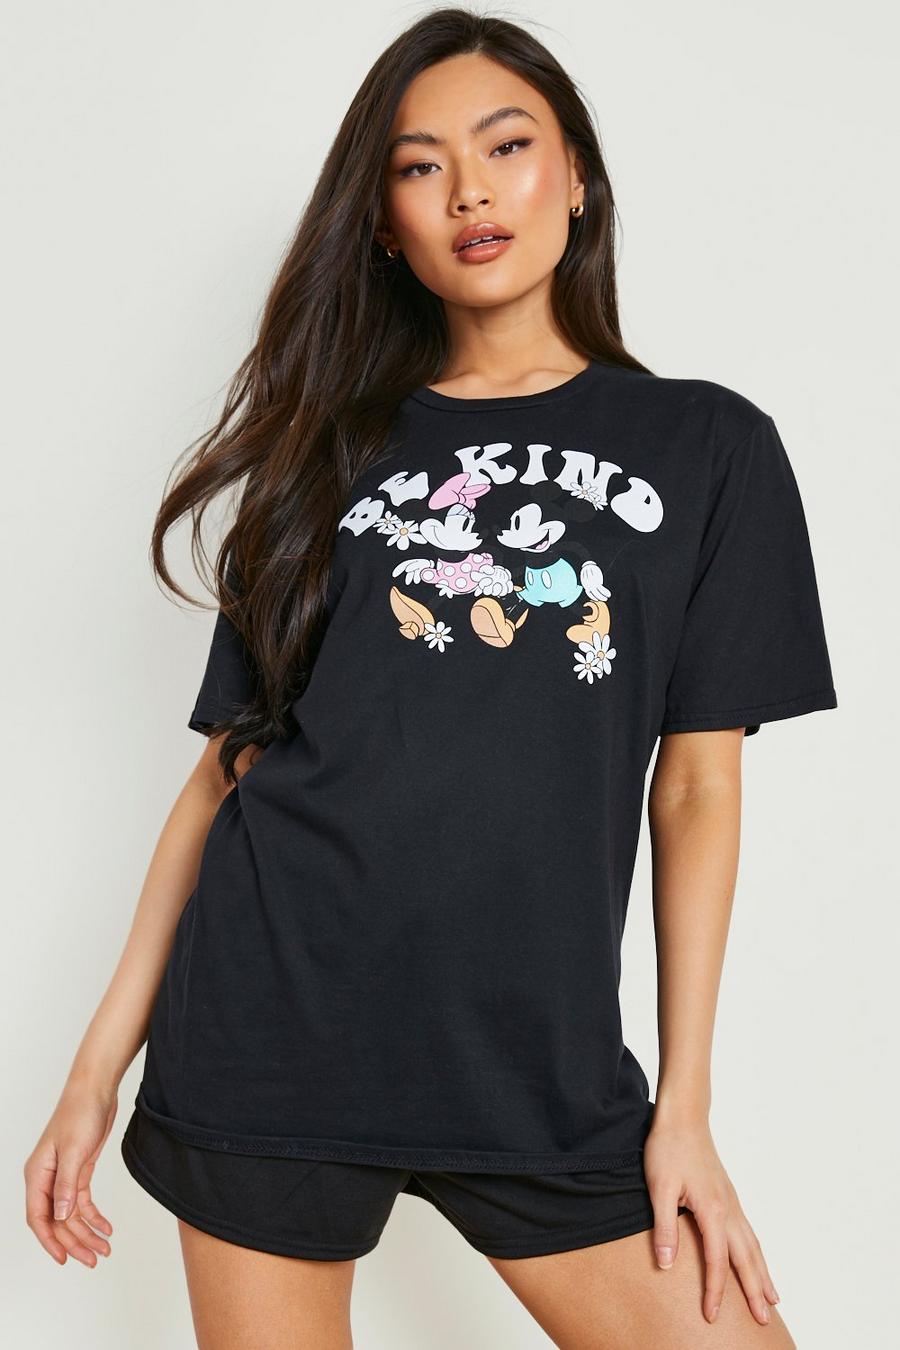 Black Disney Minnie Mickey Be Kind T-shirt & Short